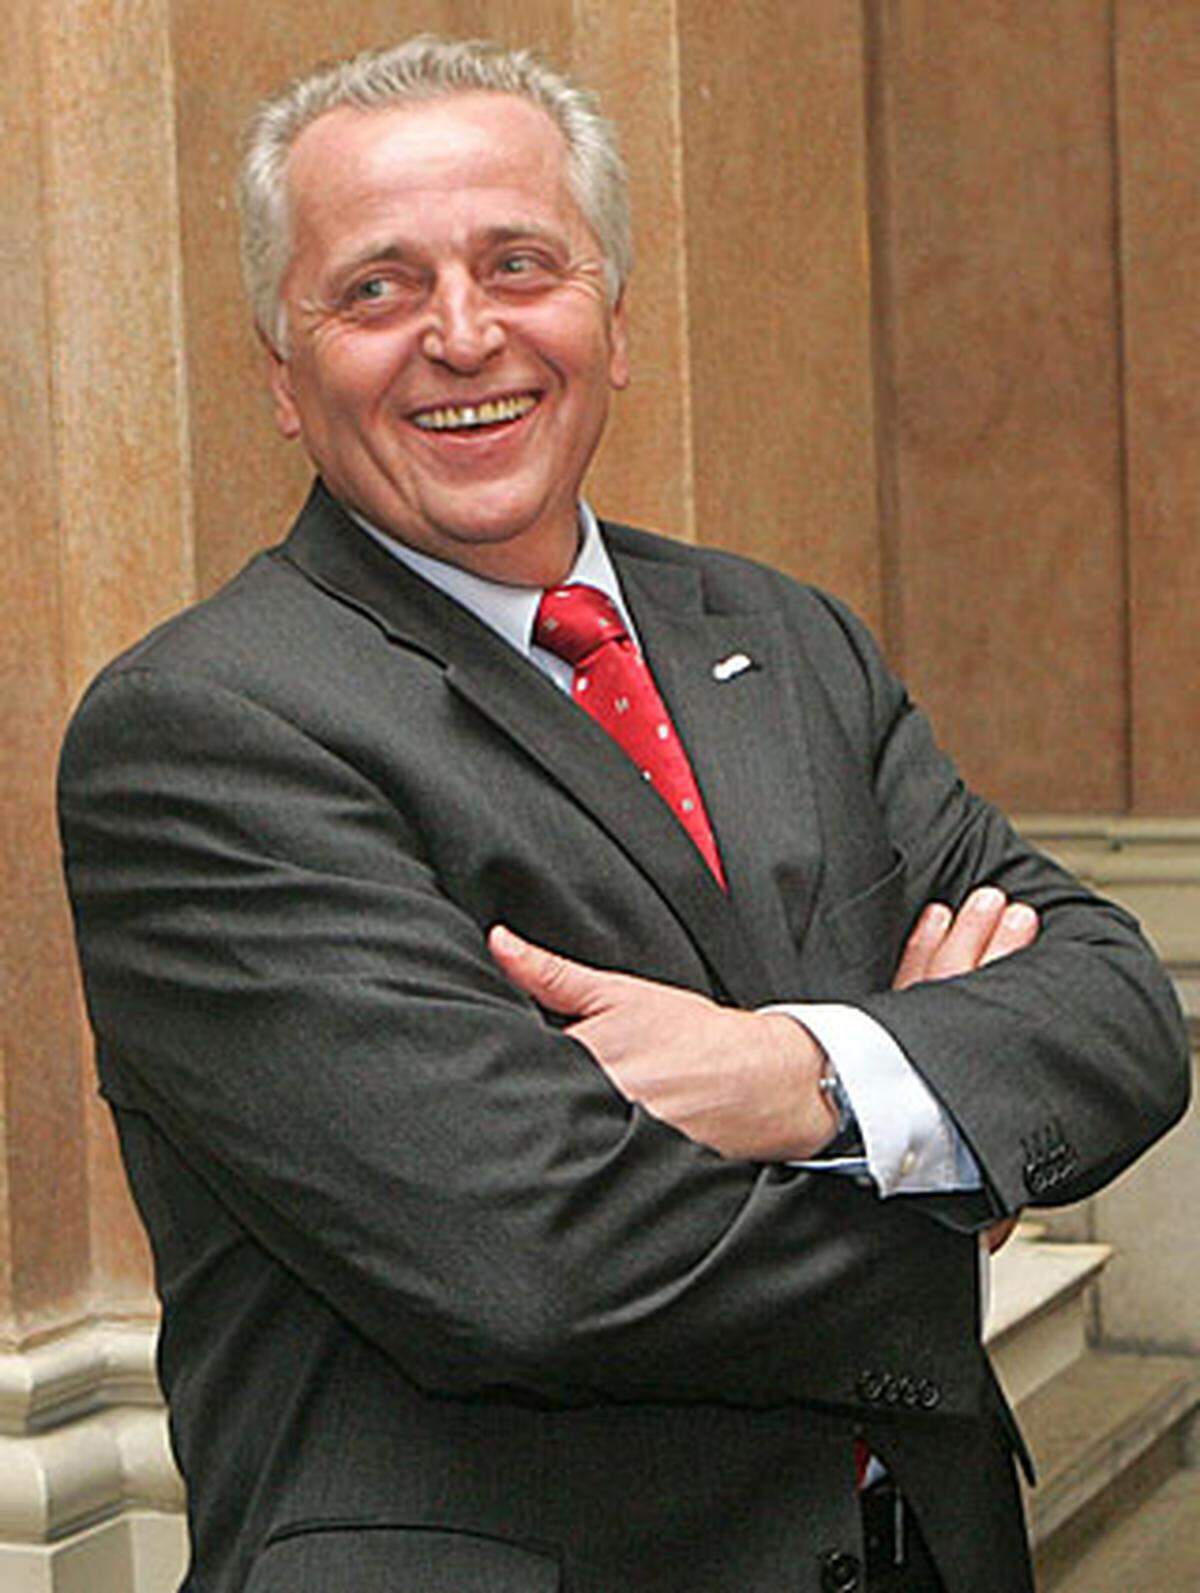 Mit Rudolf Hundstorfer (SPÖ) wurde der höchste Gewerkschafter des Landes, der ÖGB-Präsidenten höchstselbst, Sozialminister im Kabinett Faymann.